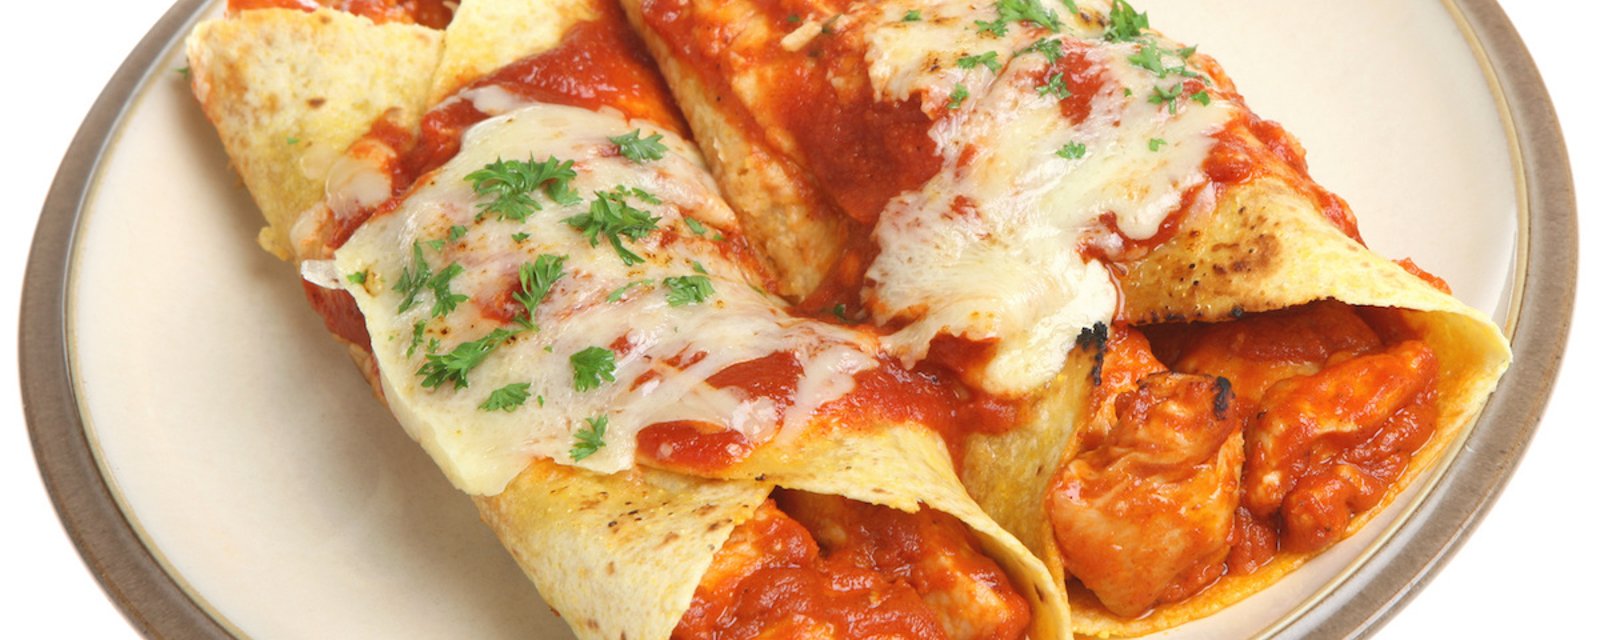 Amenez le Mexique dans votre assiette grâce à ces merveilleux enchiladas